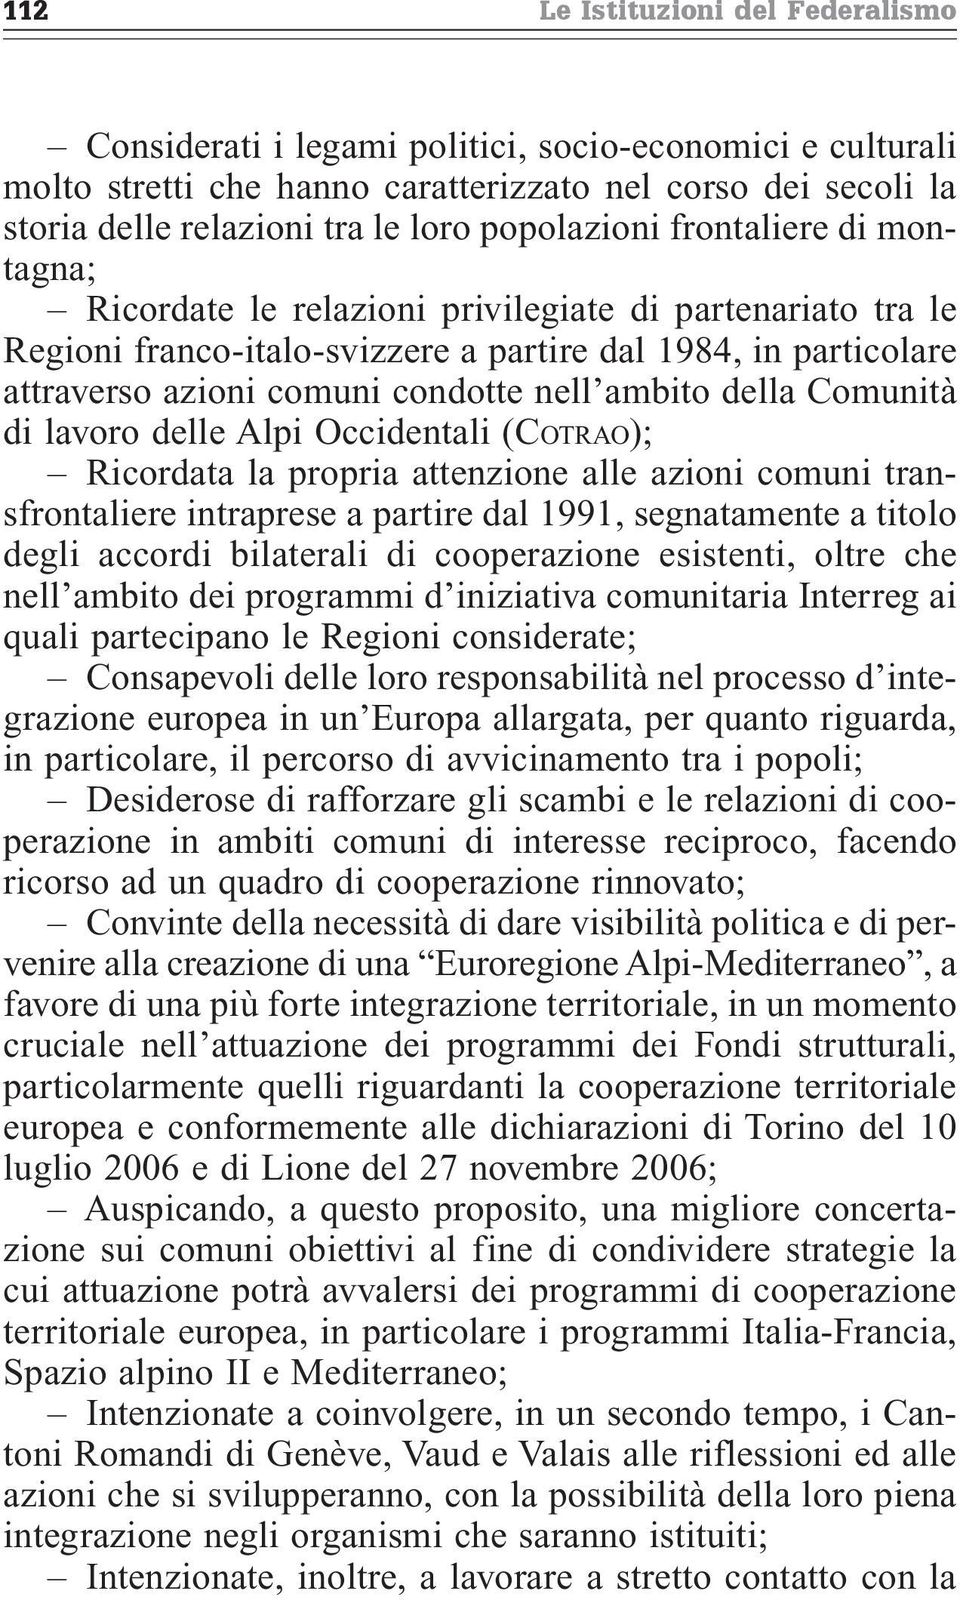 ambito della Comunità di lavoro delle Alpi Occidentali (COTRAO); Ricordata la propria attenzione alle azioni comuni transfrontaliere intraprese a partire dal 1991, segnatamente a titolo degli accordi